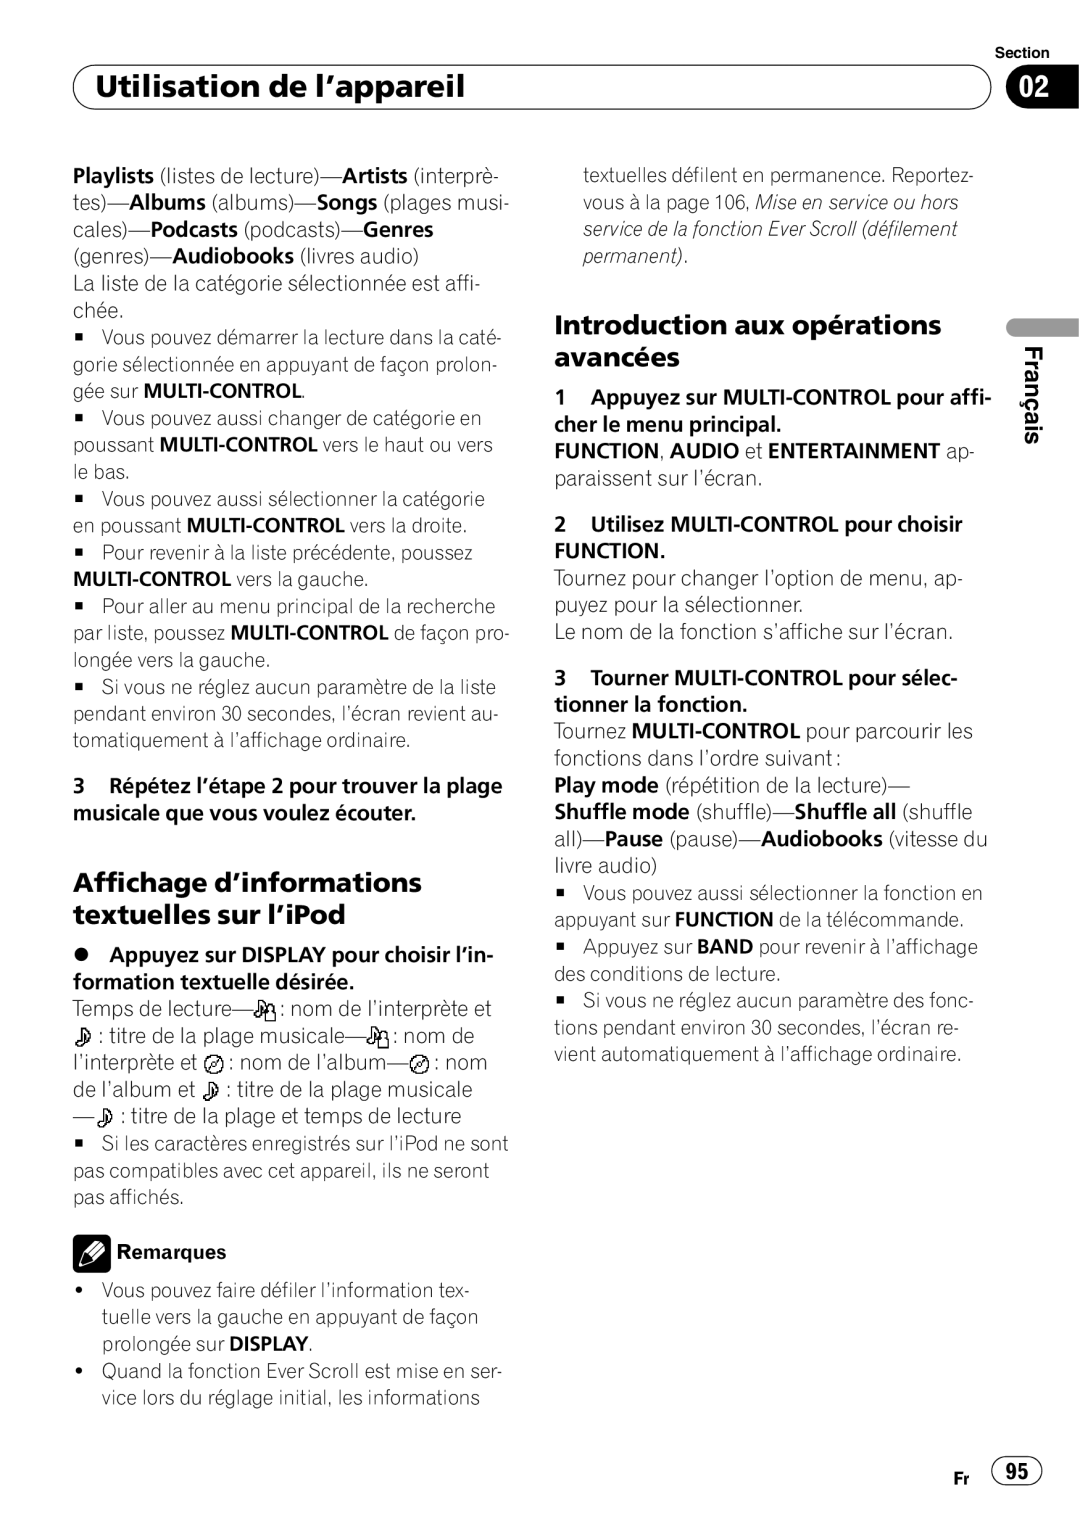 Pioneer DEH-P690UB operation manual Affichage d’informations textuelles sur l’iPod, Utilisation de l’appareil, Français 